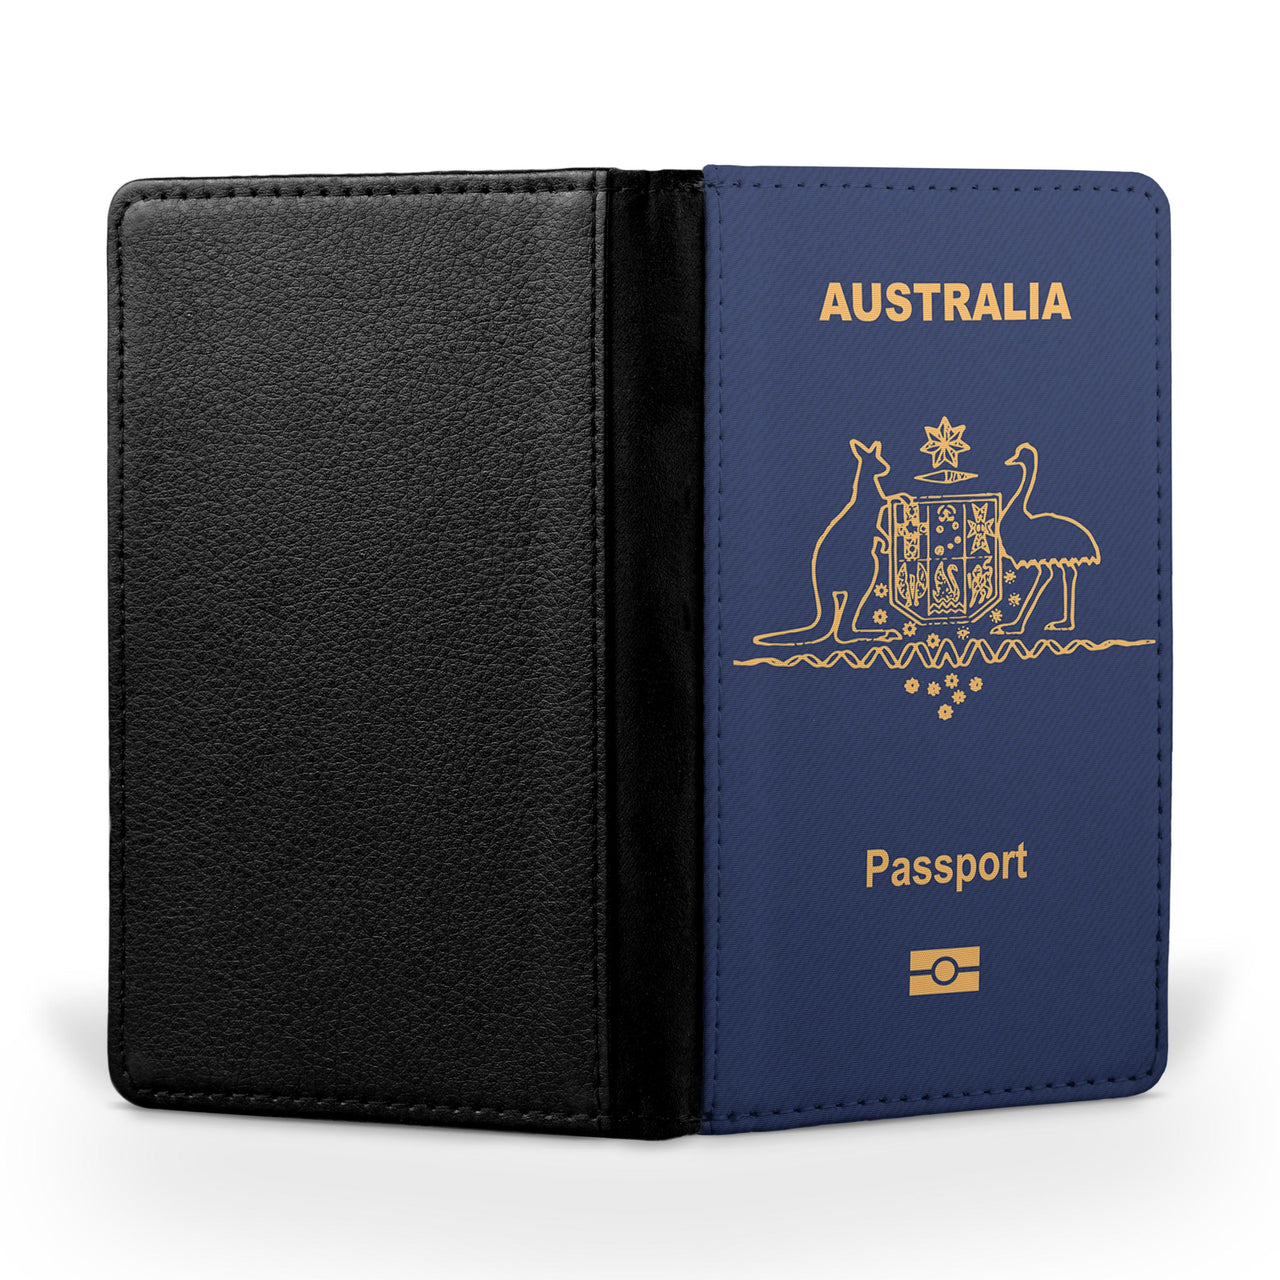 Australia Passport Designed Passport & Travel Cases